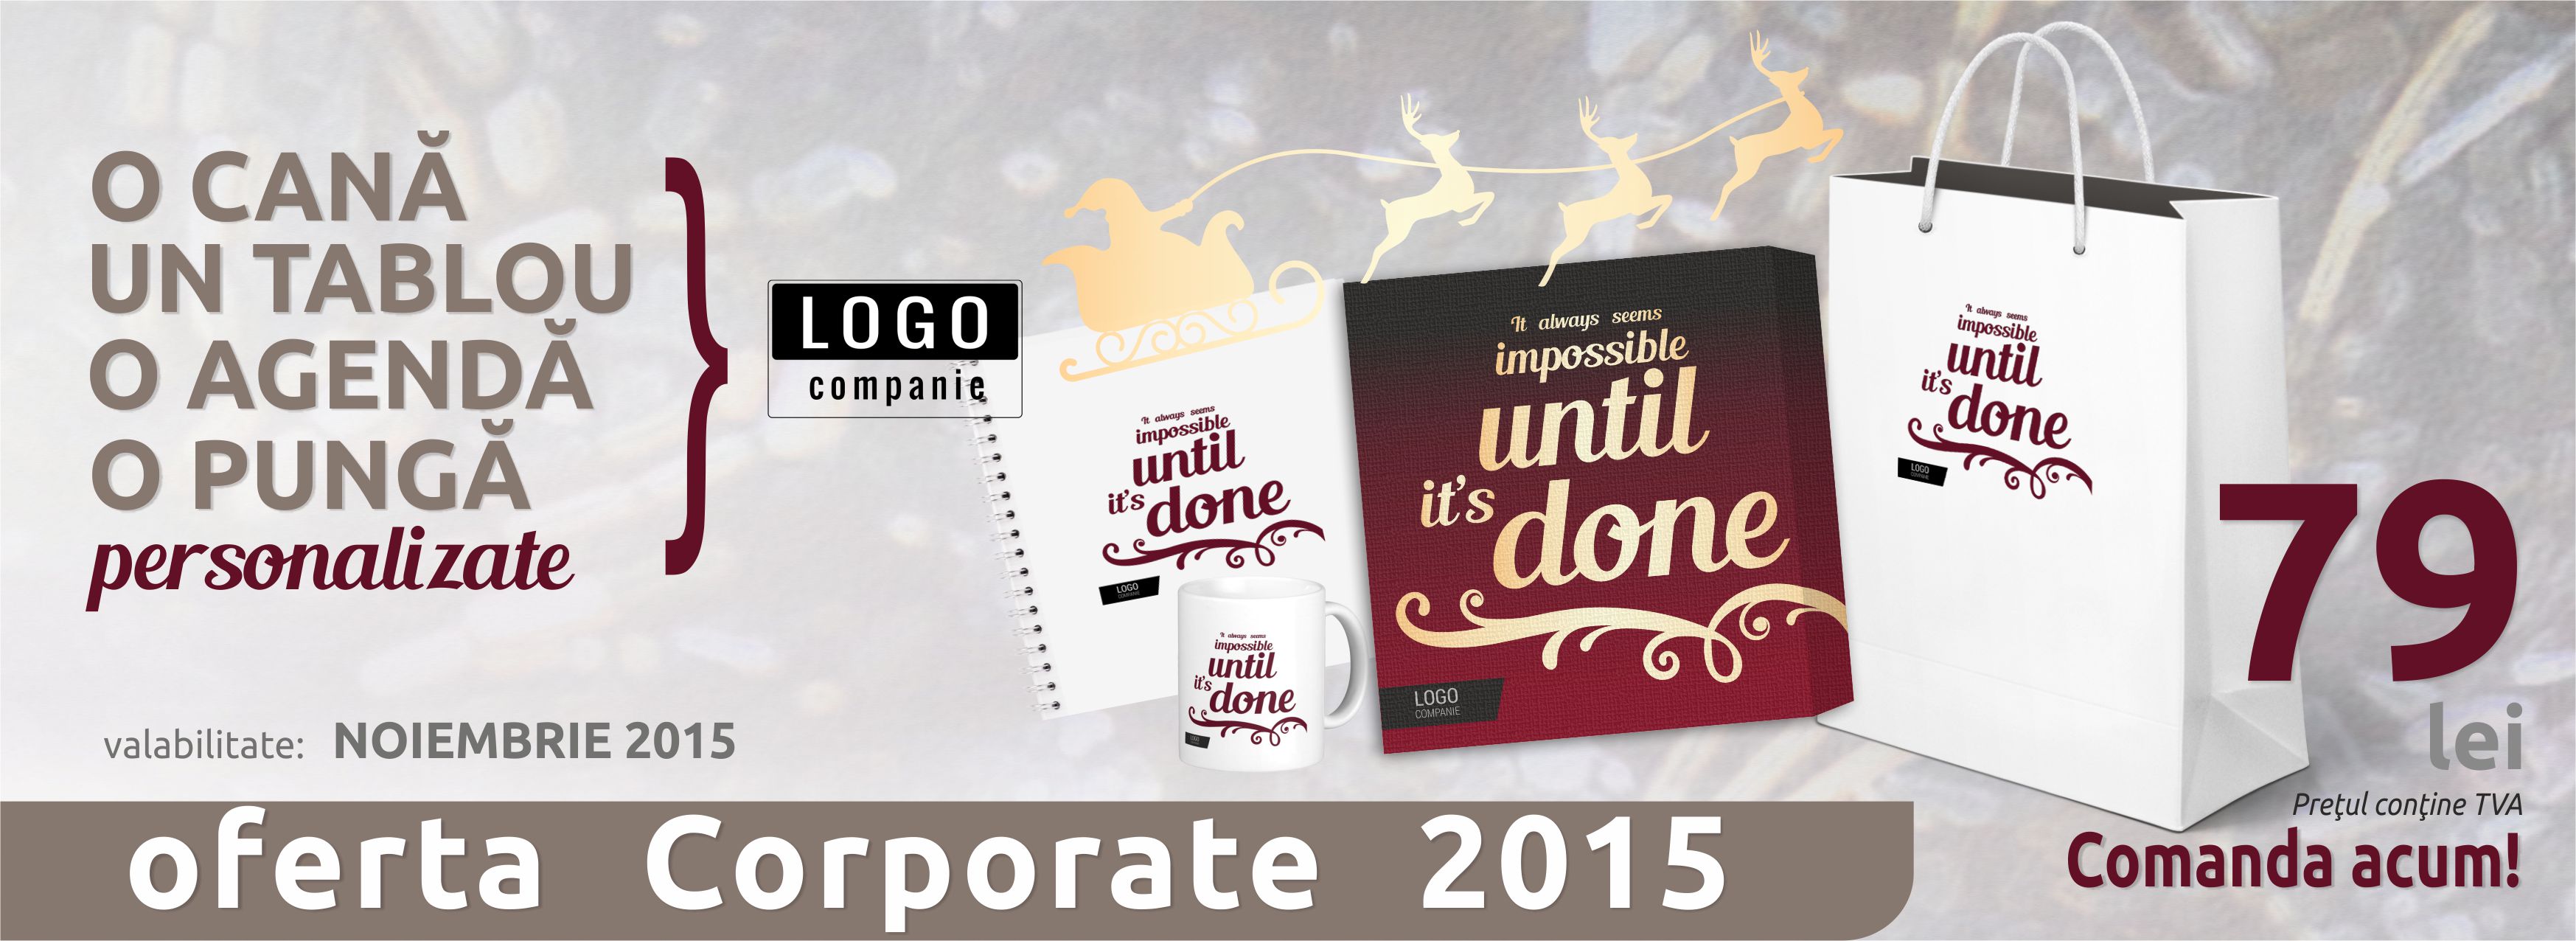 Oferta Corporate 2015